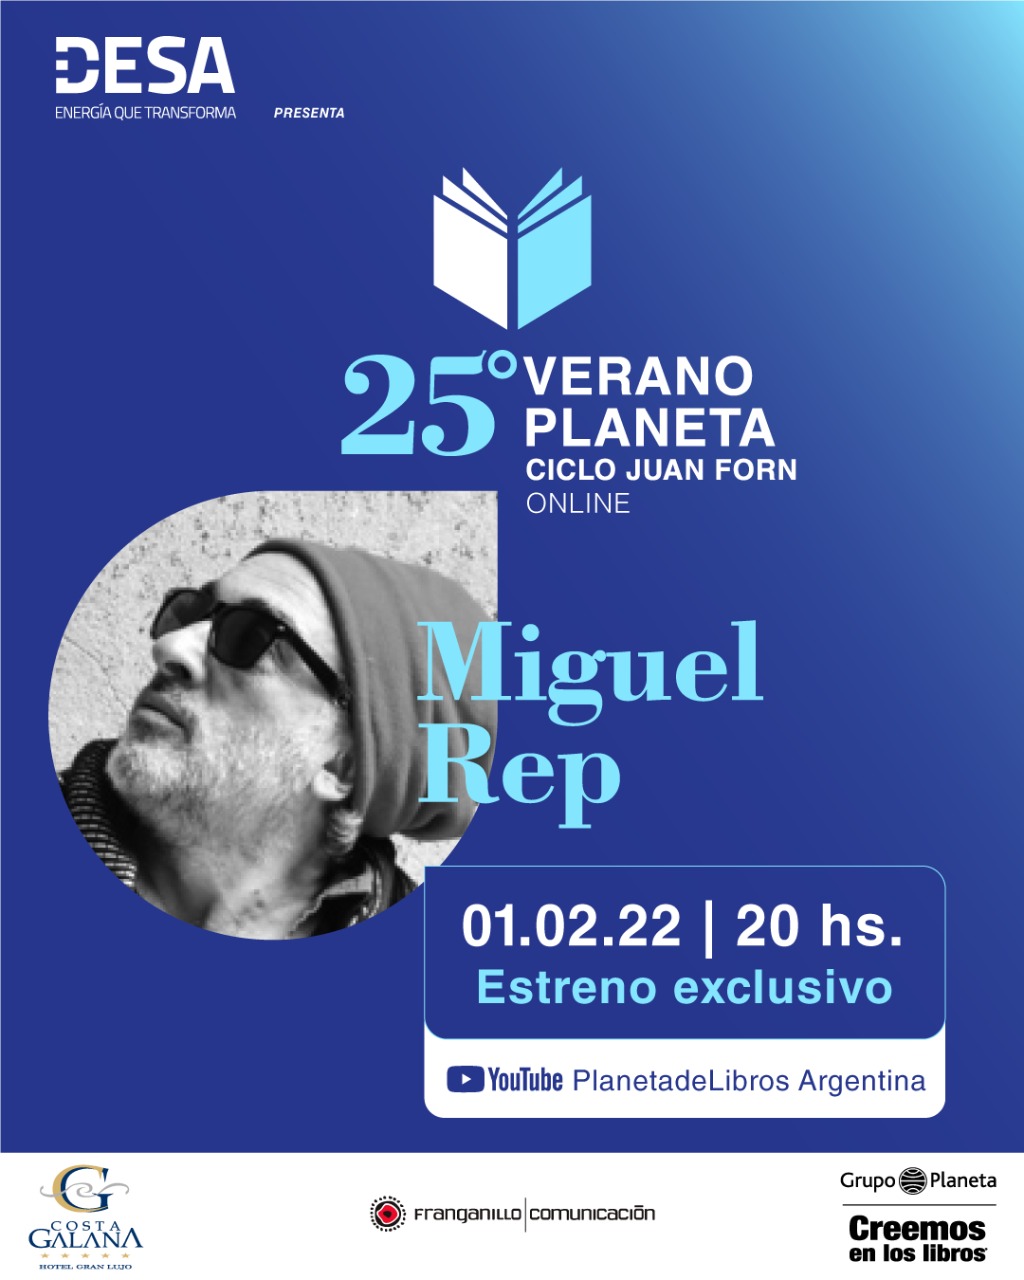 Miguel REP en la primera charla de febrero en “Verano Planeta 25 Años, Ciclo Juan Forn”